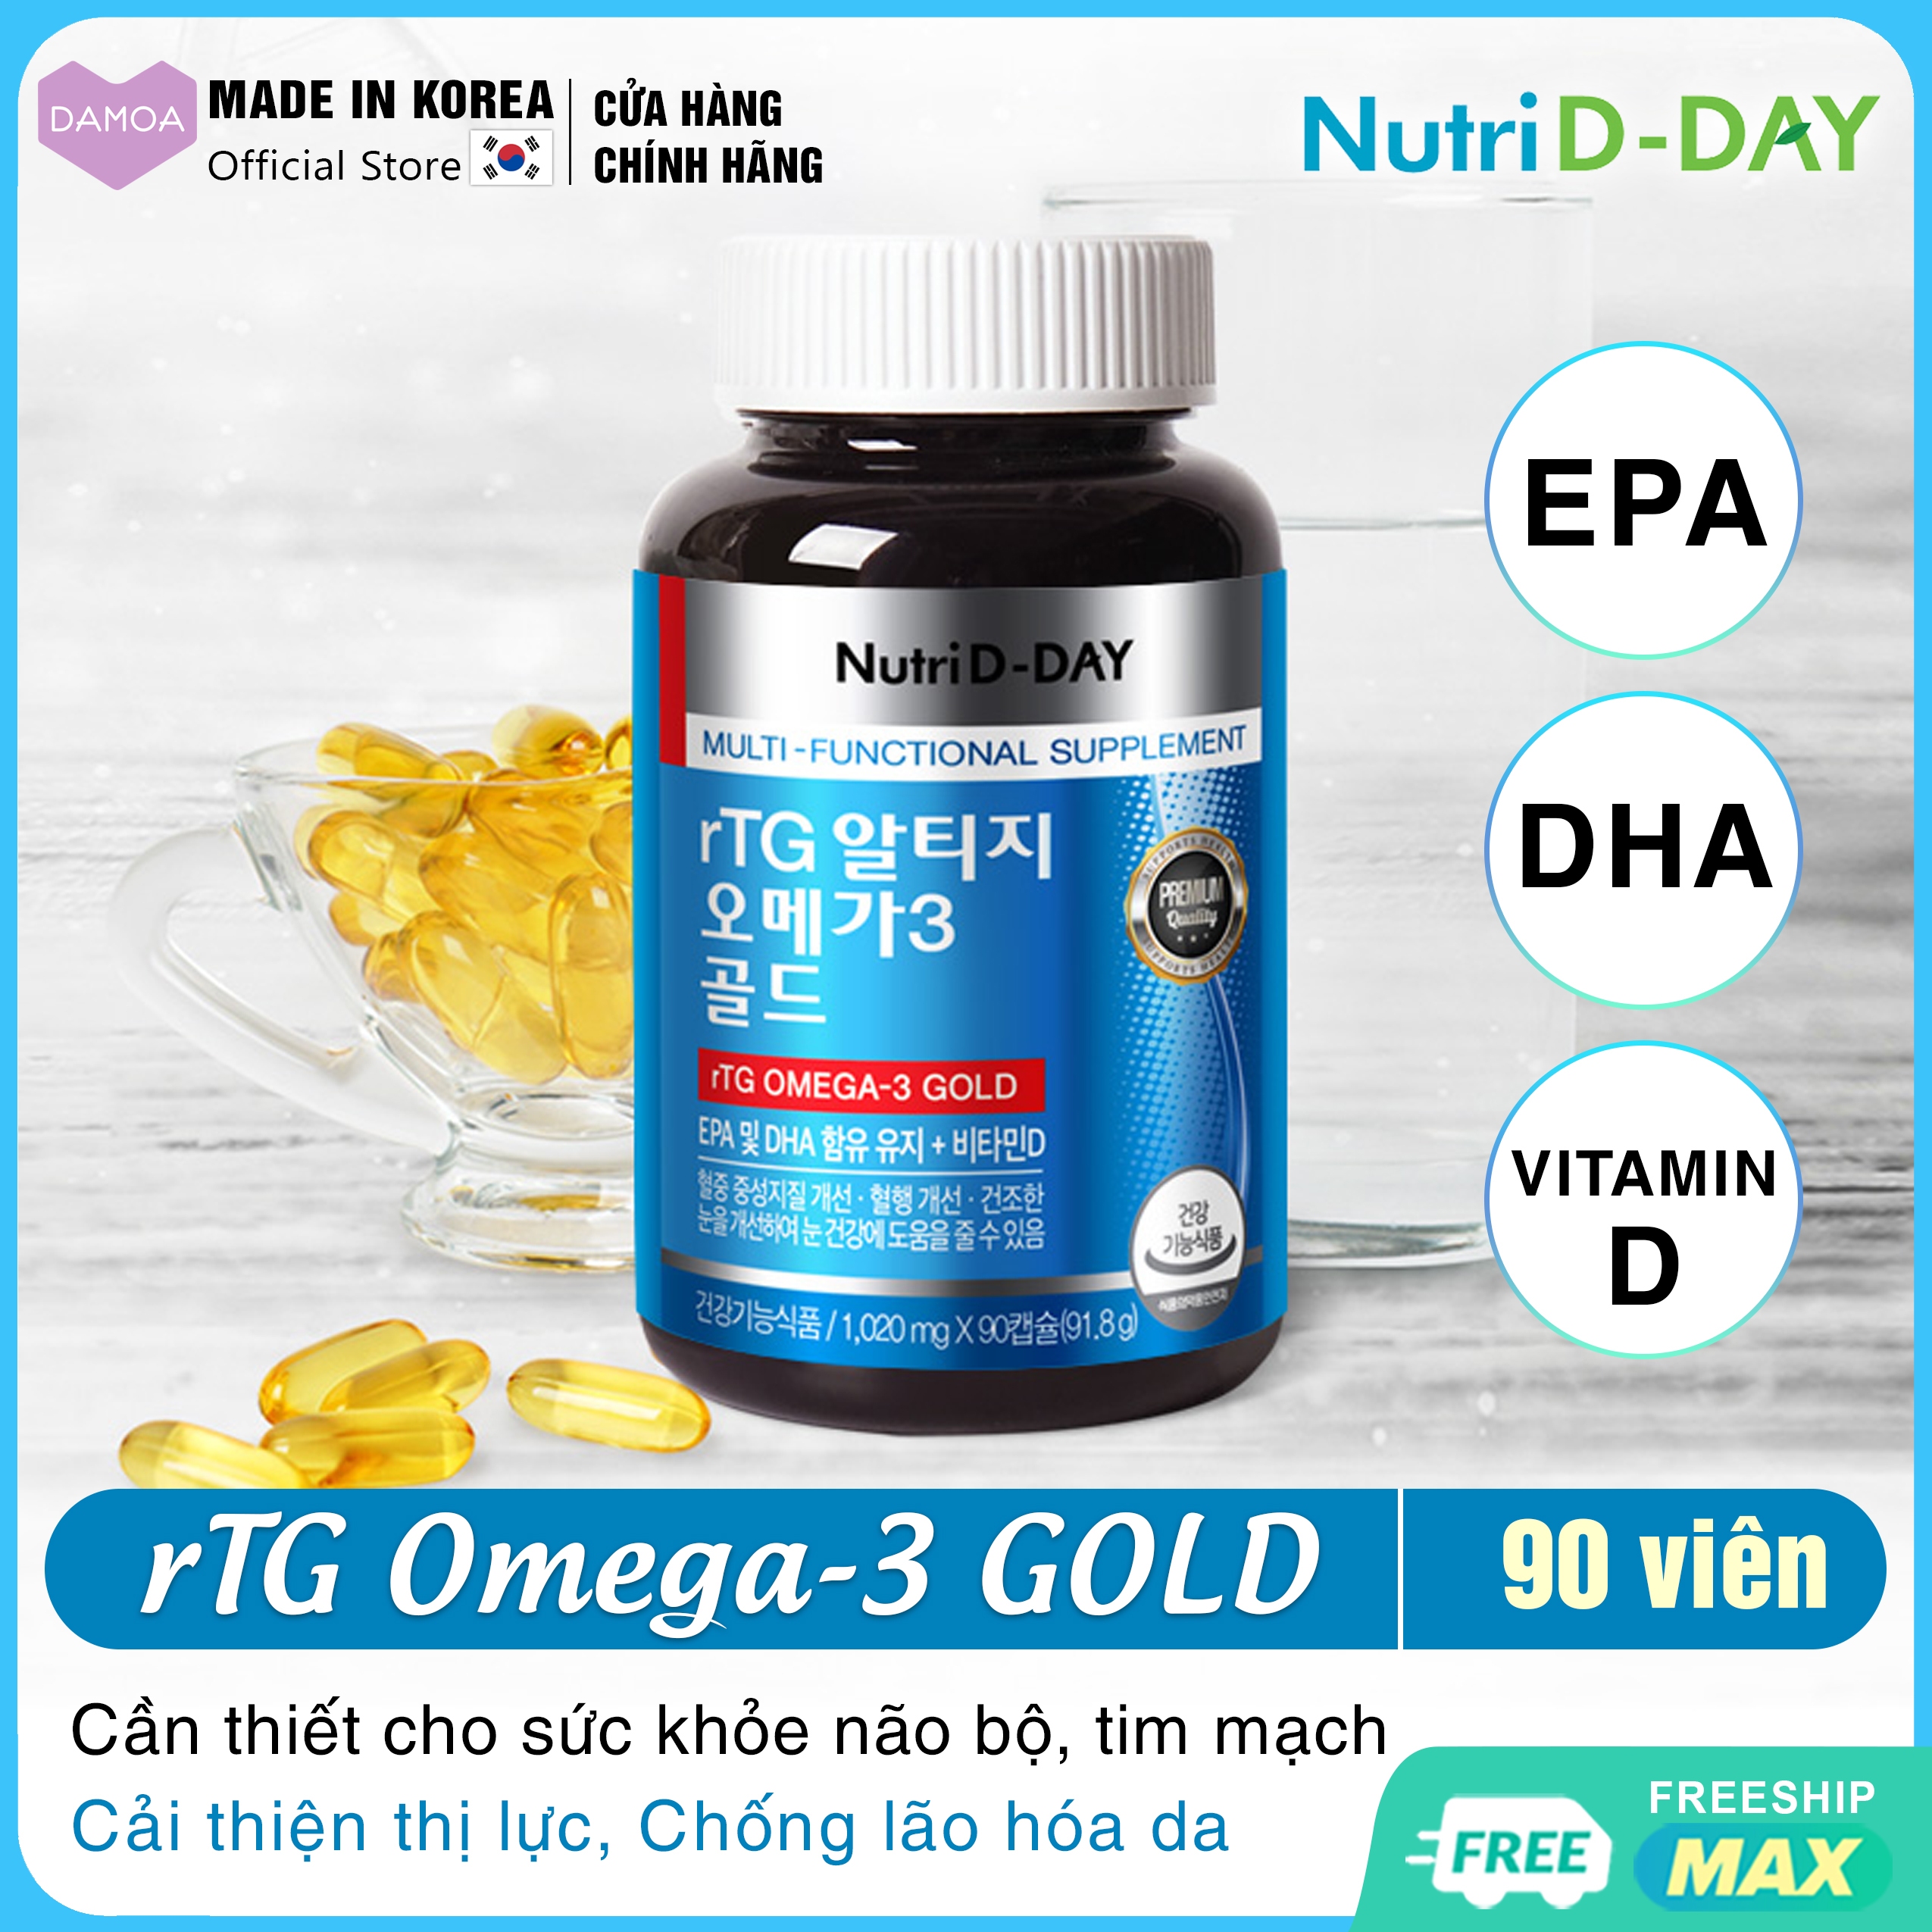 Lọ 90 Viên Uống rTG Omega-3 GOLD NUTRI D-DAY Hàn Quốc EPA, DHA